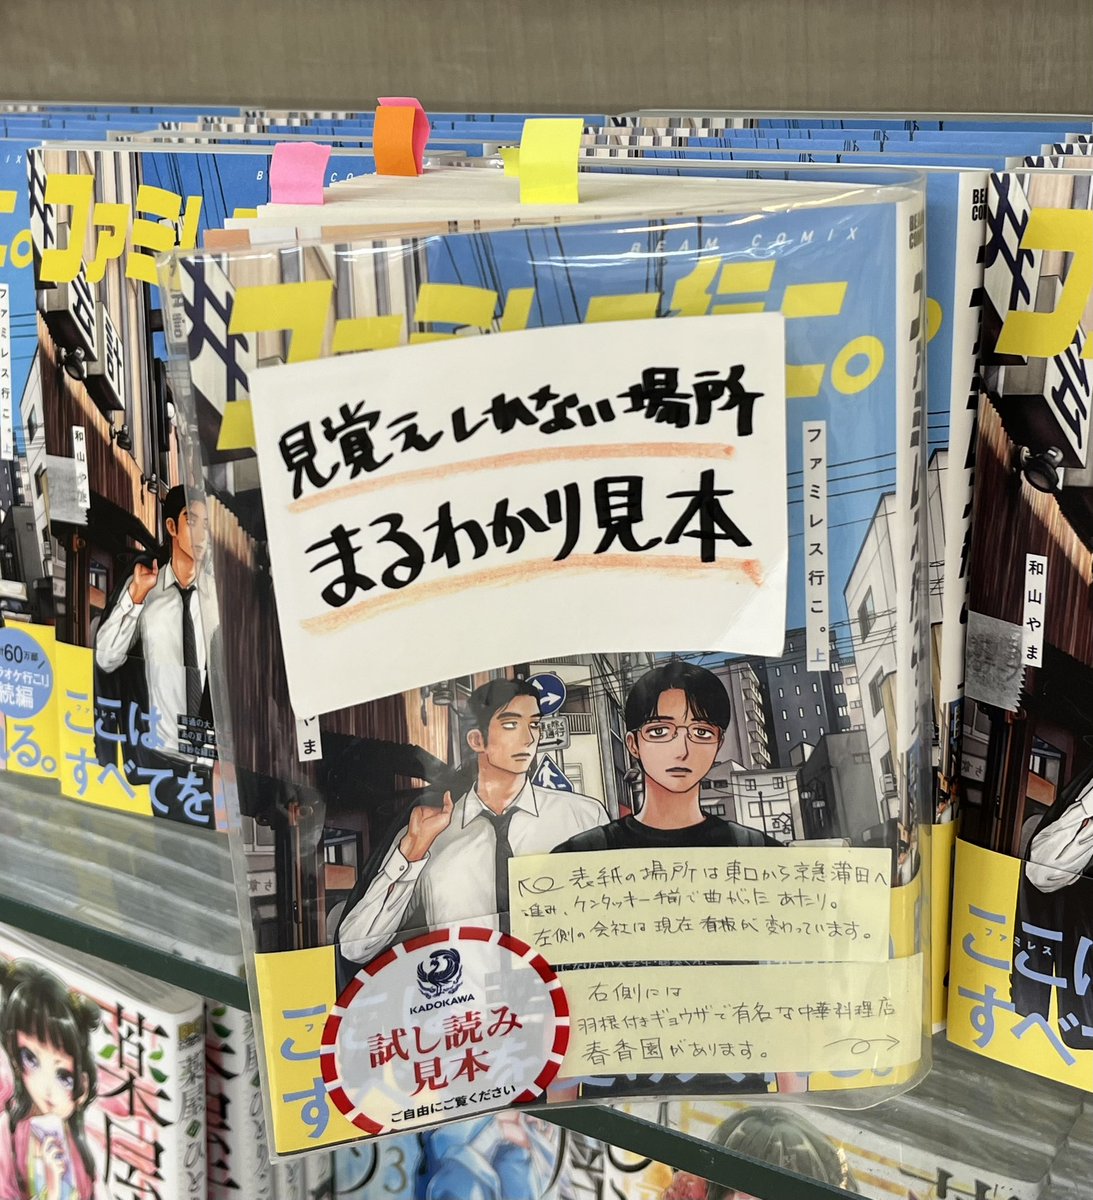 蒲田に行ったついでに…
鯛さんから聞いてた『ファミレス行こ。』コーナーがあるらしい本屋さん、ここかなあと思って行ったらビンゴでした✌️
聖地巡礼マップある😆
さすが地元！
📗出てくるページに付箋貼ってある！👍
素晴らしい✨